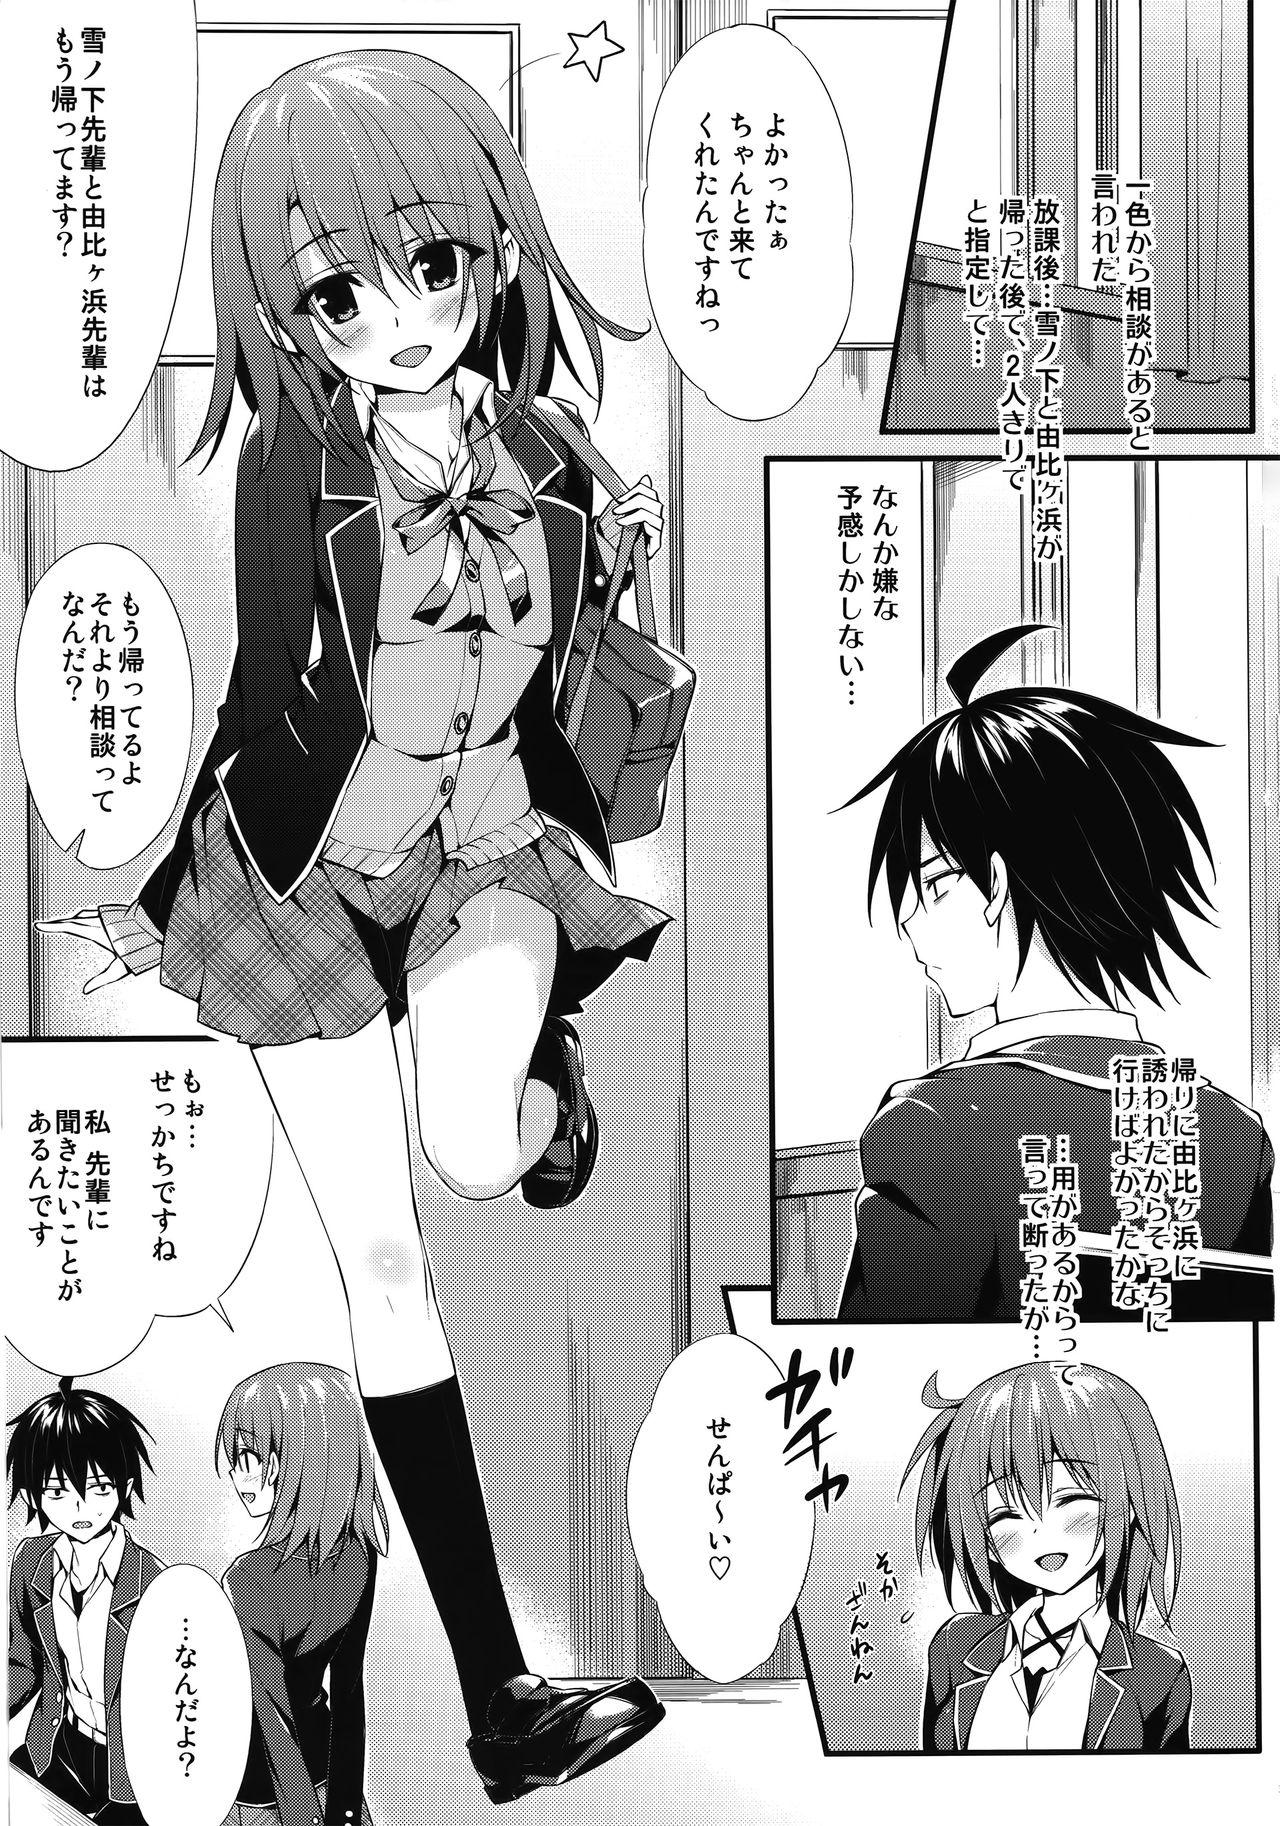 Topless Irohasu Gentei - Yahari ore no seishun love come wa machigatteiru Condom - Page 2